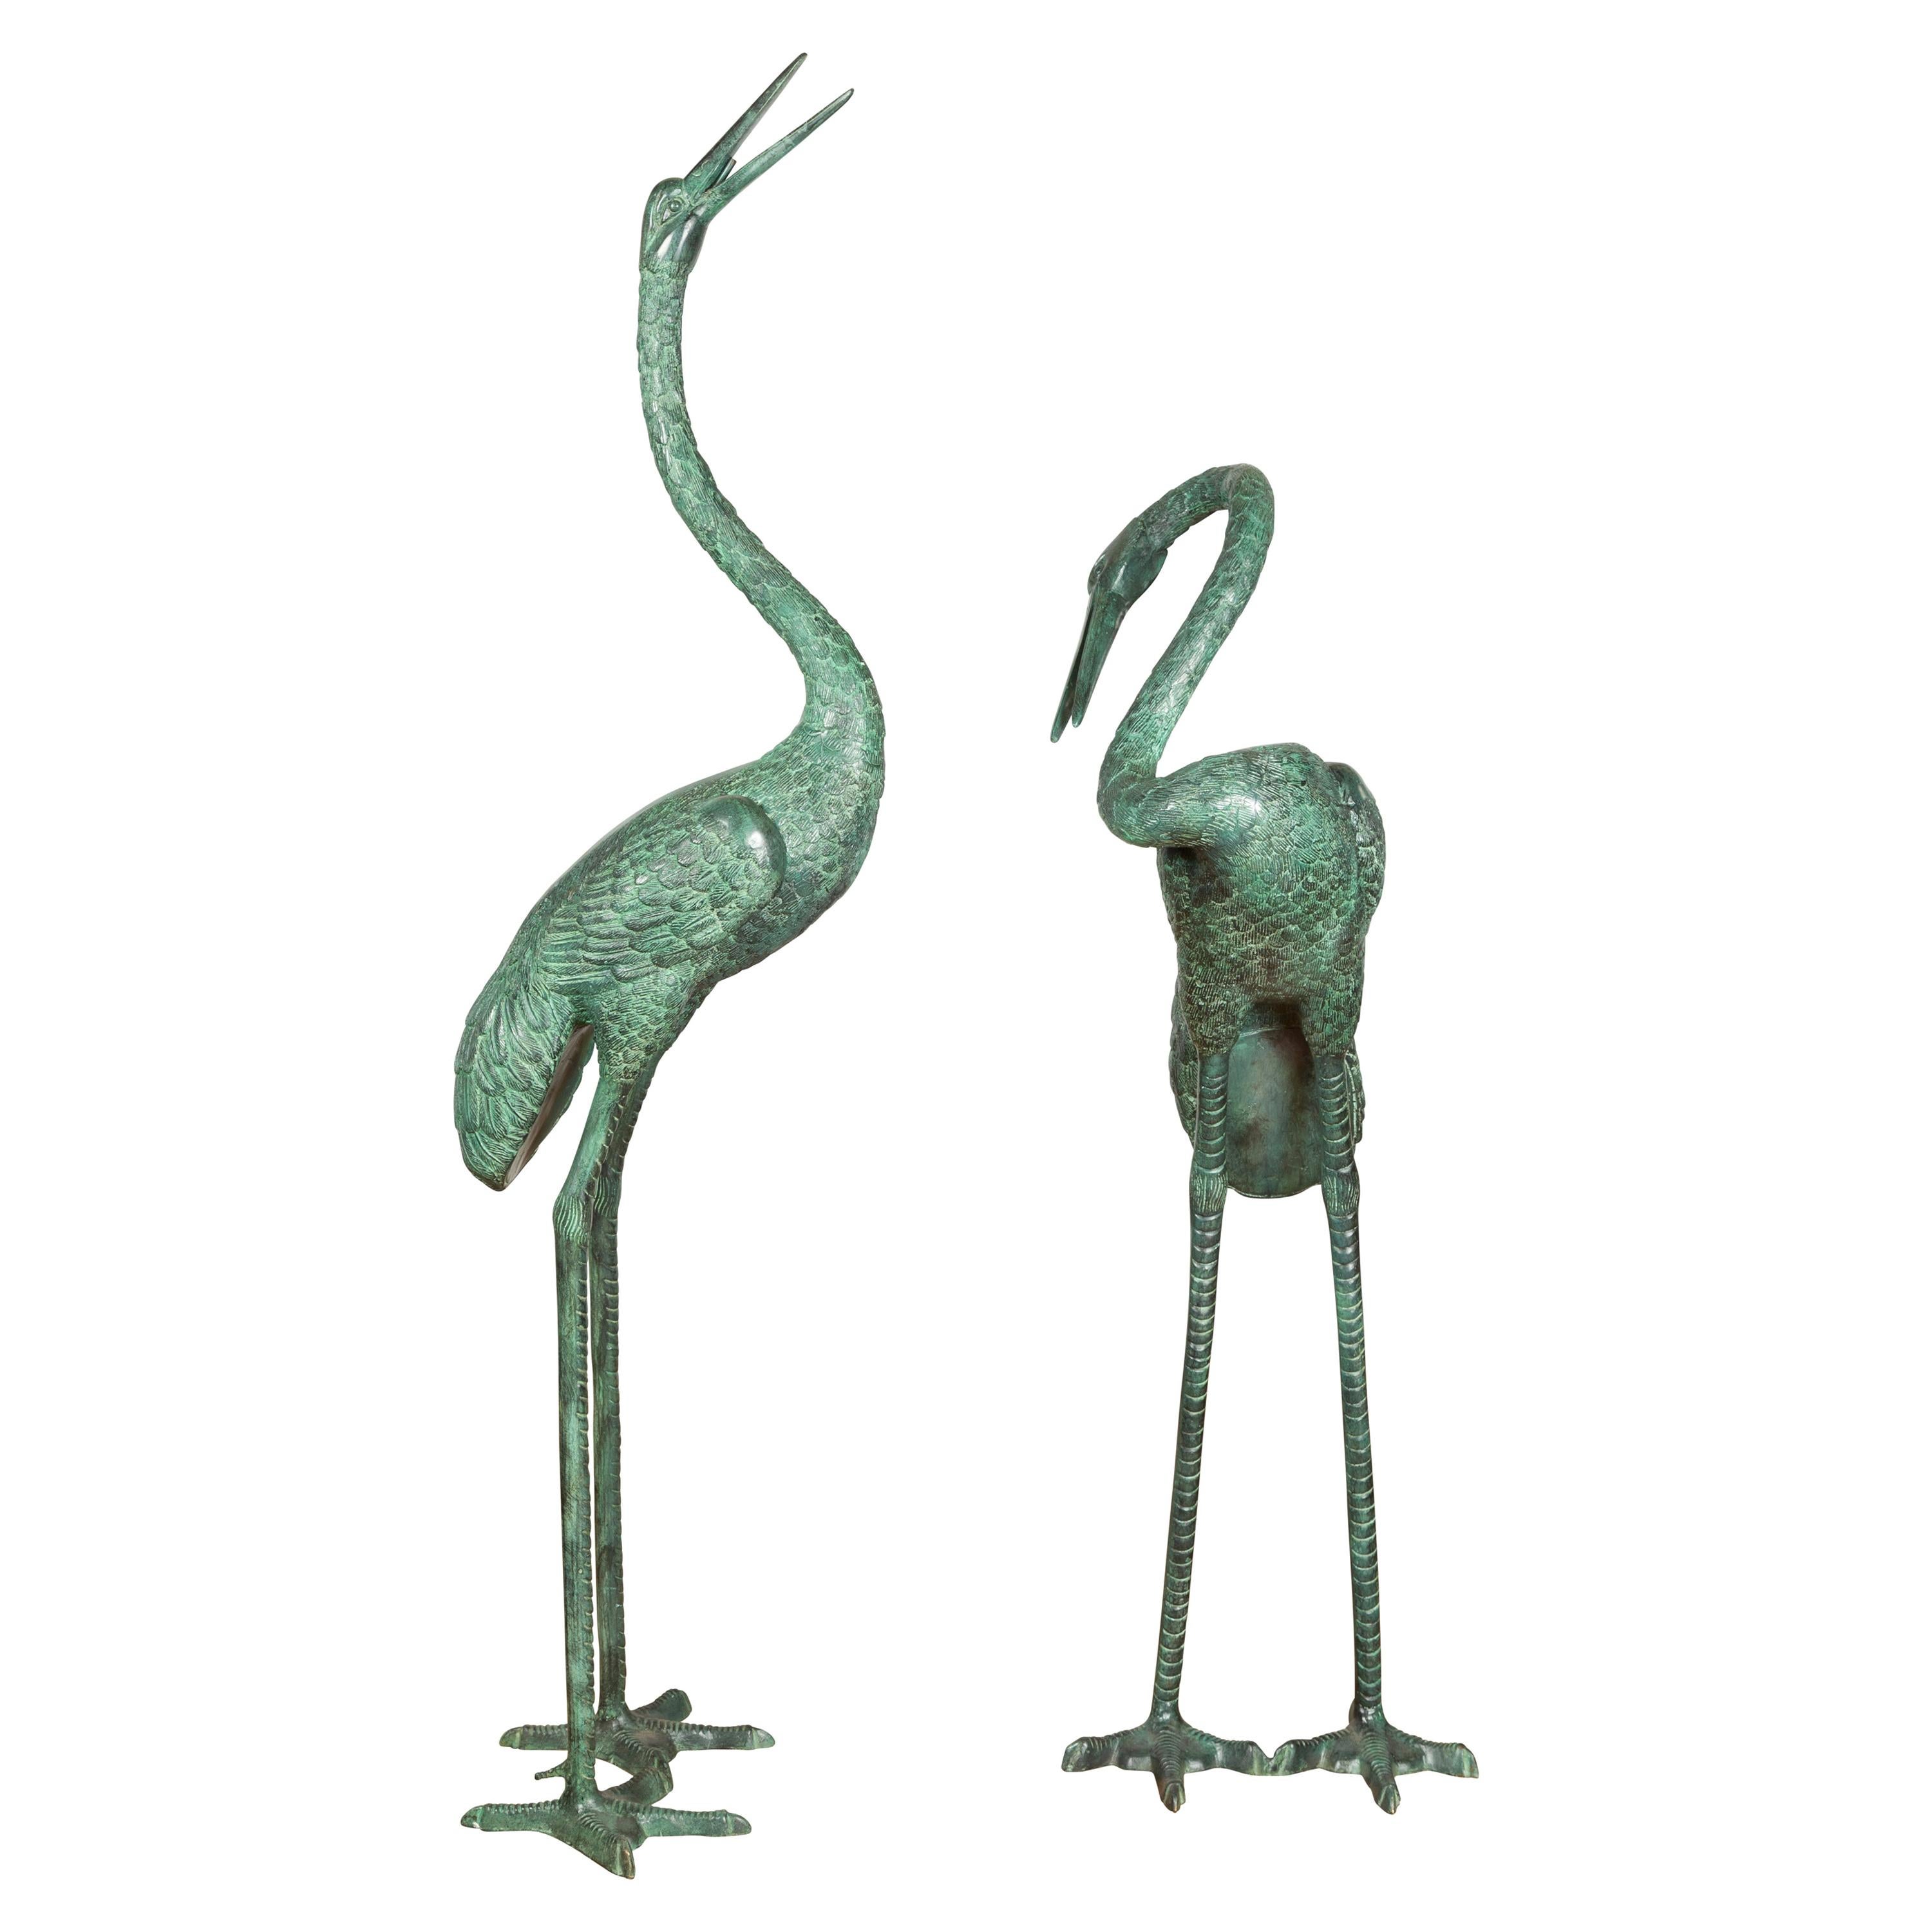 Pair of Contemporary Verdigris Bronze Crane Sculptures Tubed as Fountains